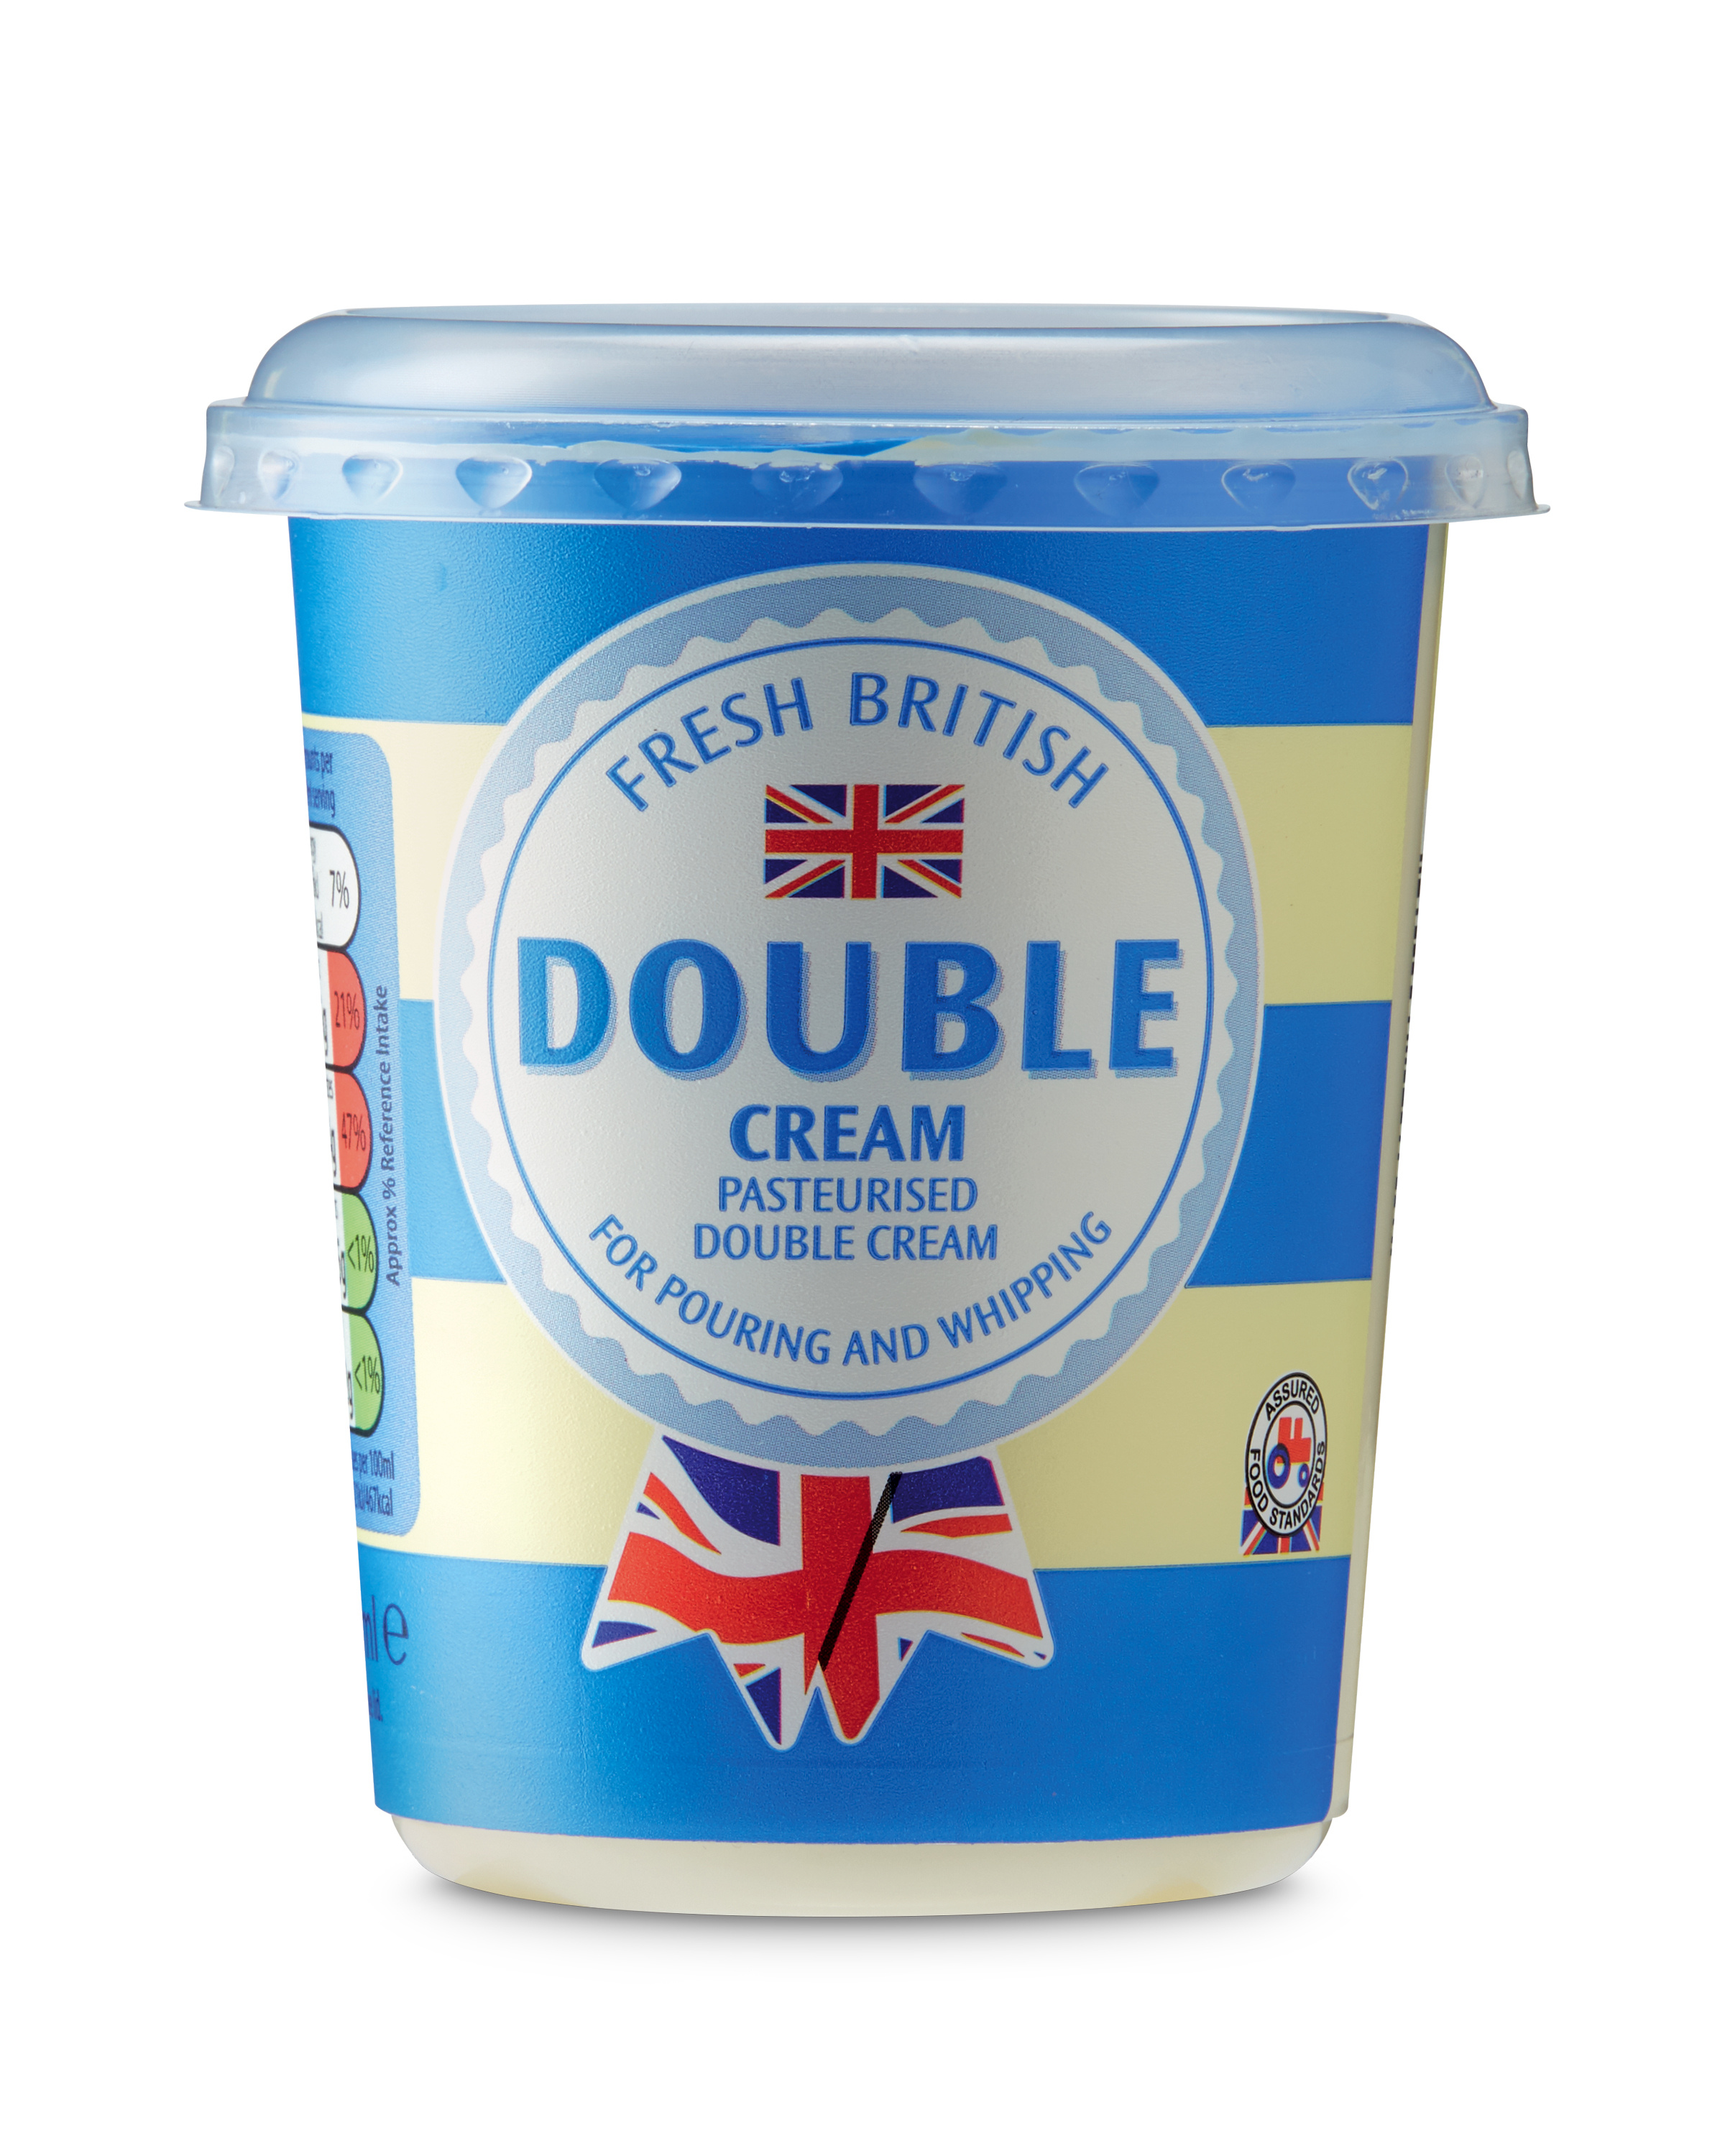 Double Cream Deal at Aldi, Offer Calendar week